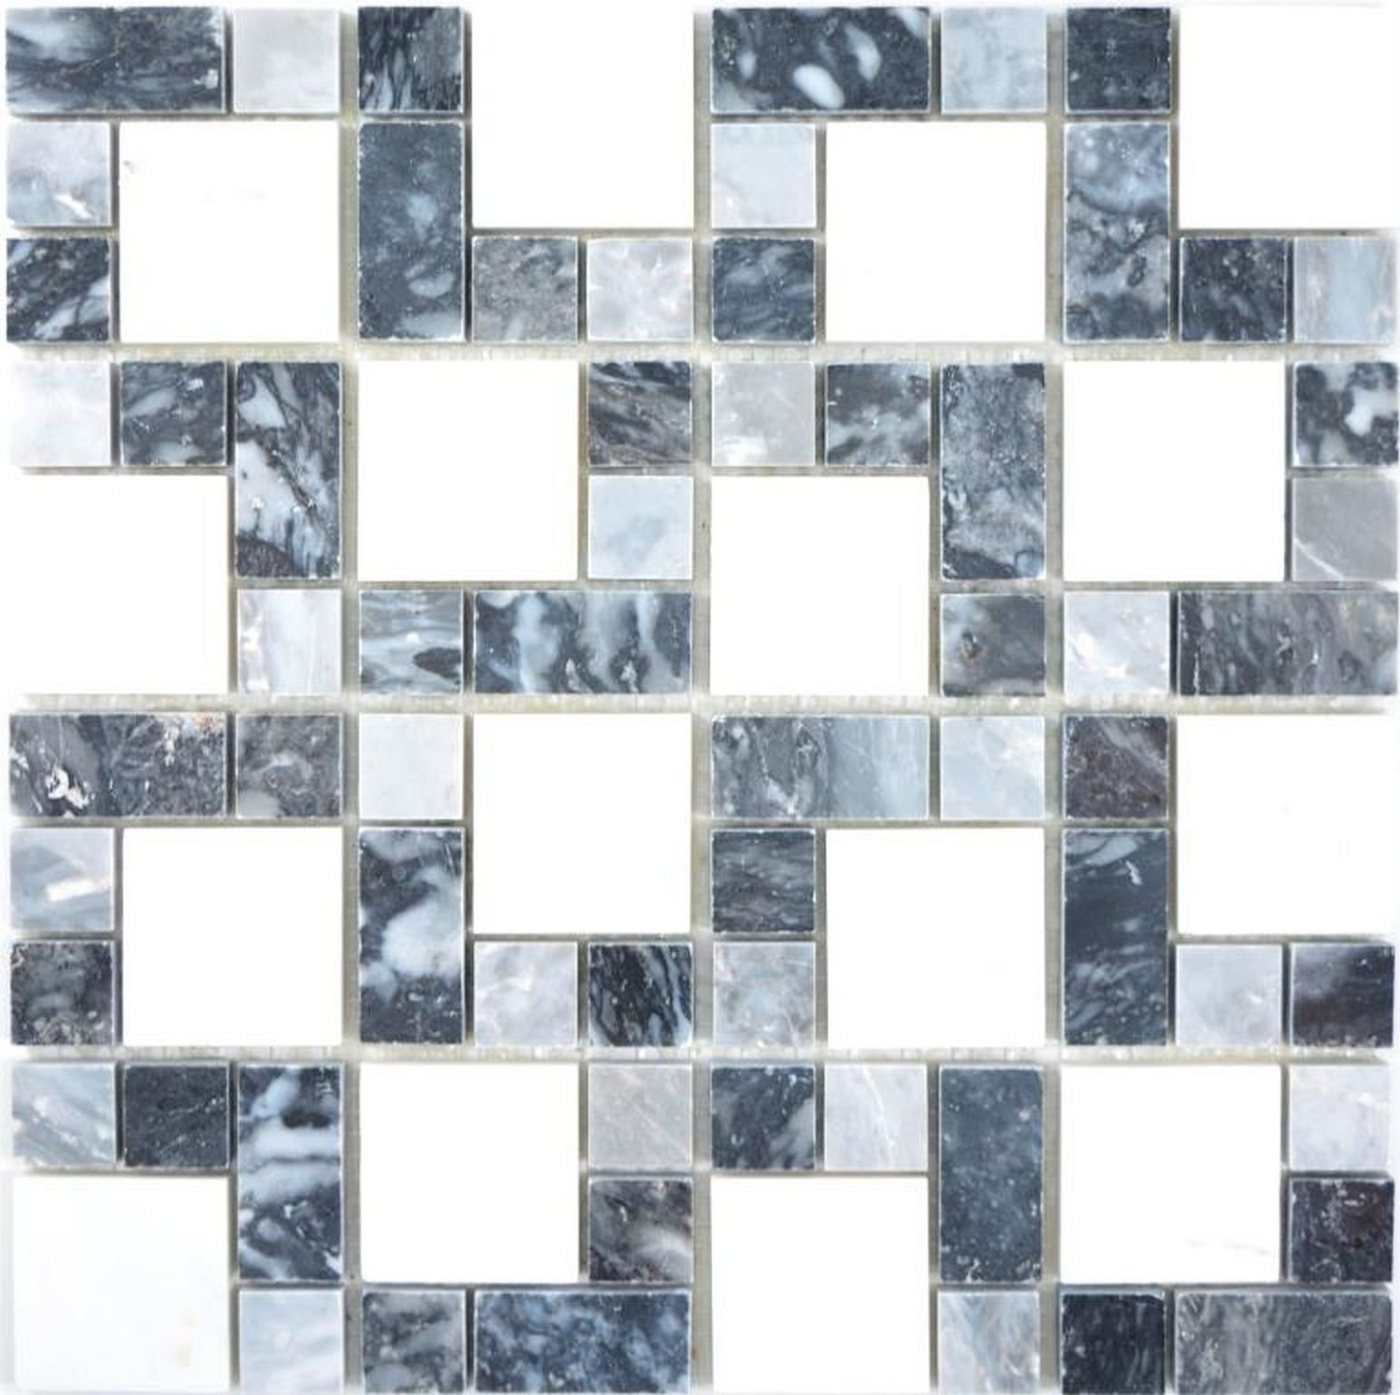 Mosani Mosaikfliesen Marmor Mosaik Fliese schwarz grau weiß anthrazit von Mosani